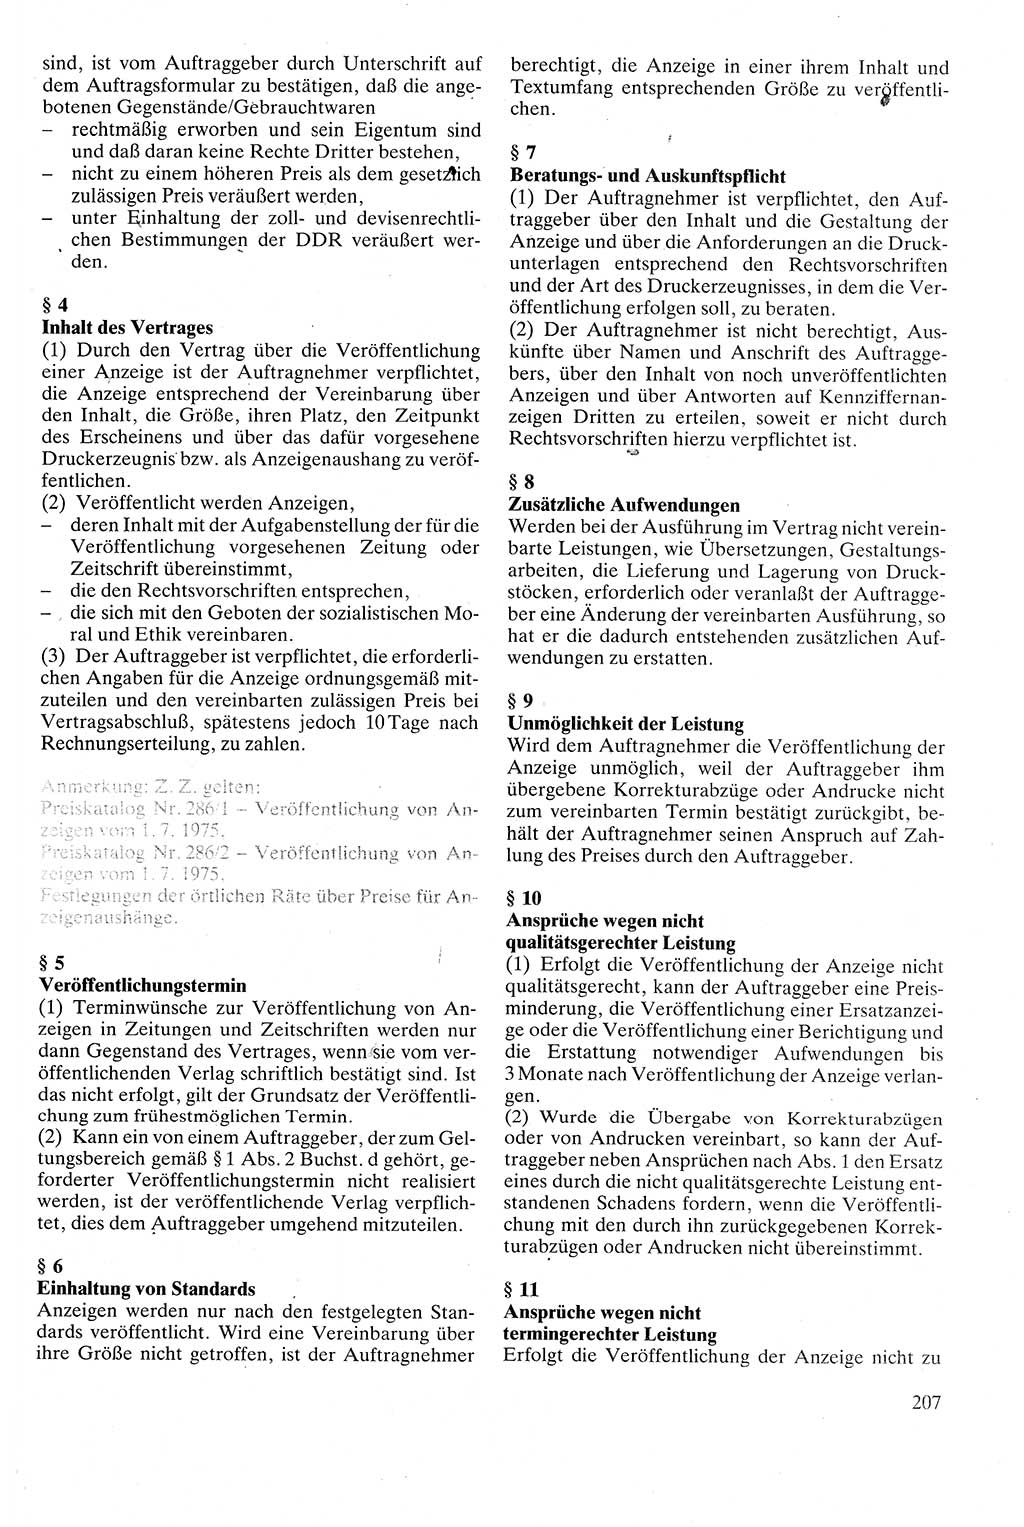 Zivilgesetzbuch (ZVG) sowie angrenzende Gesetze und Bestimmungen [Deutsche Demokratische Republik (DDR)] 1975, Seite 207 (ZGB Ges. Best. DDR 1975, S. 207)